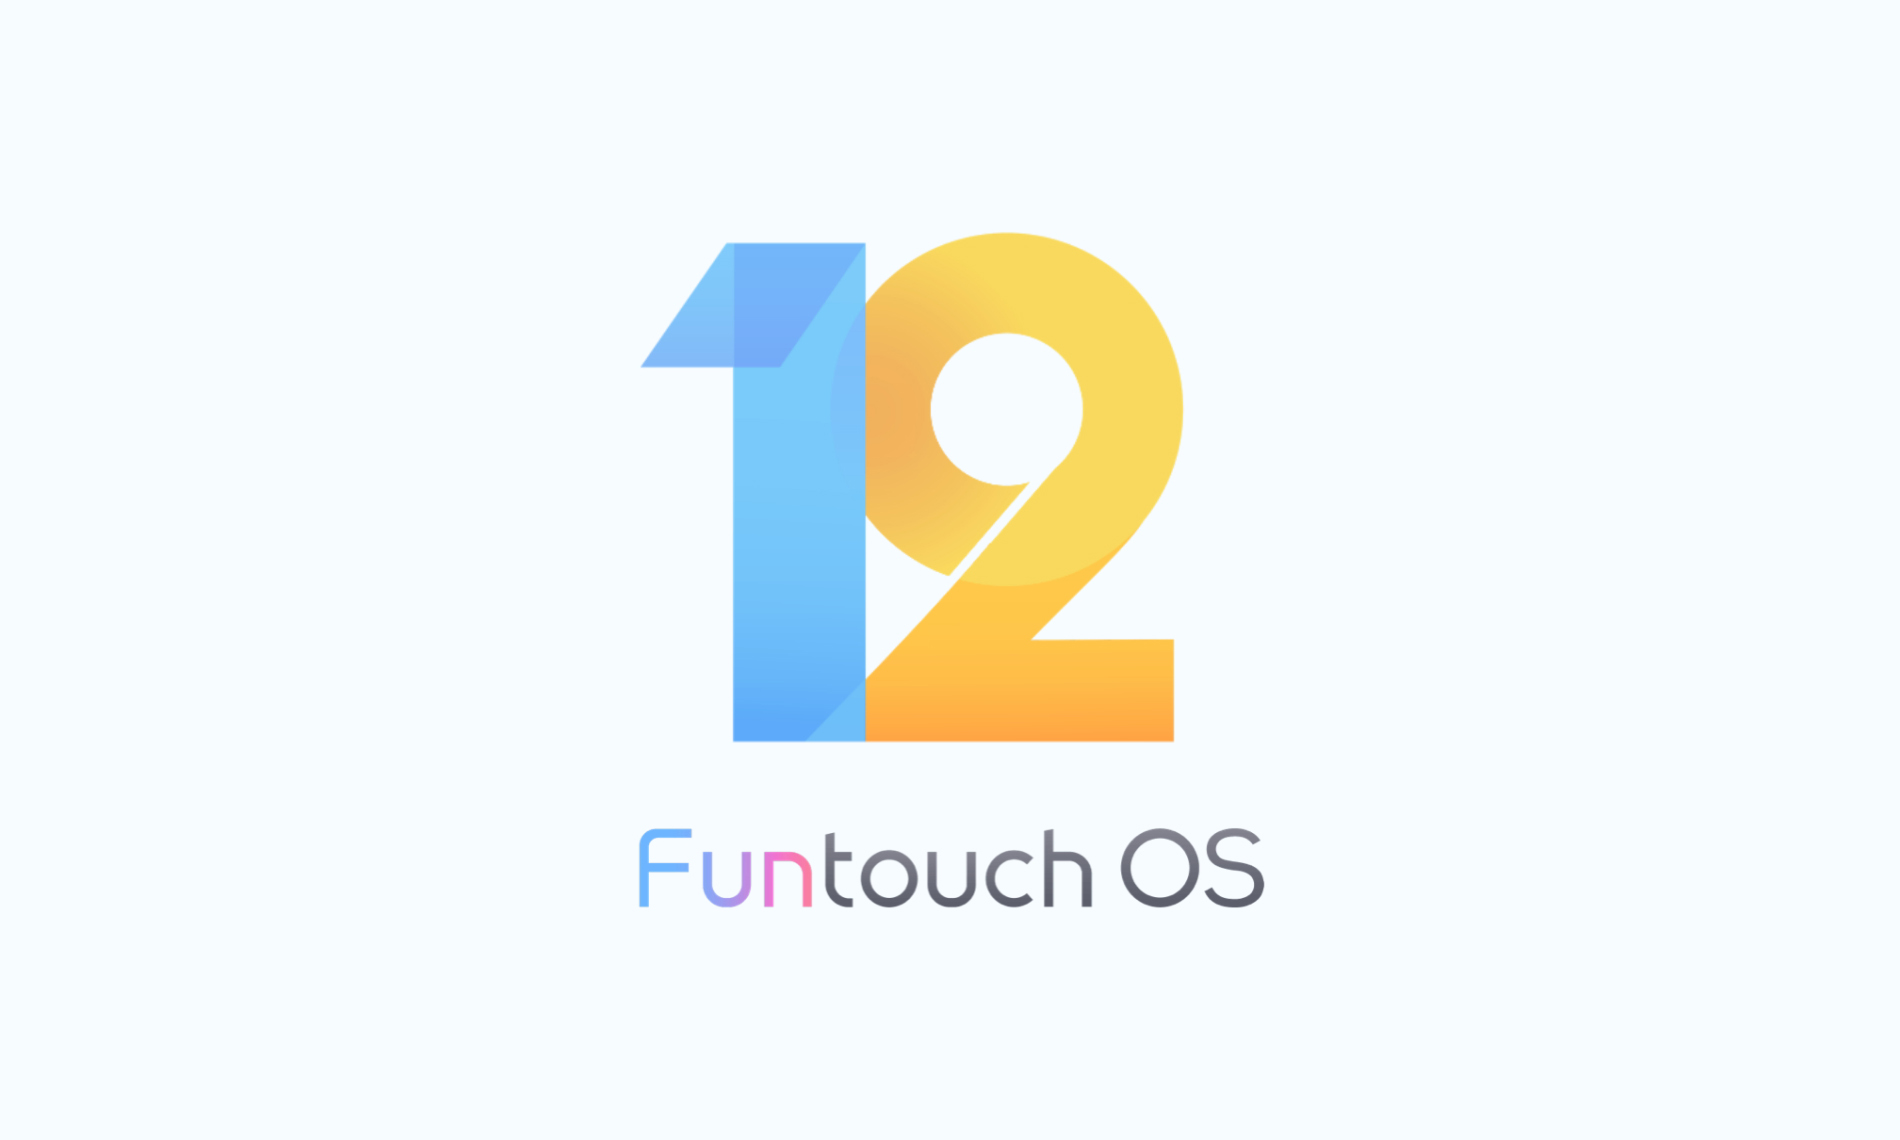 Korisničko iskustvo krojeno po svačijoj meri – vivo ažuriranje Funtouch OS 12 korisničkog interfejsa donosi nove boje Android 12 operativnom sistemu